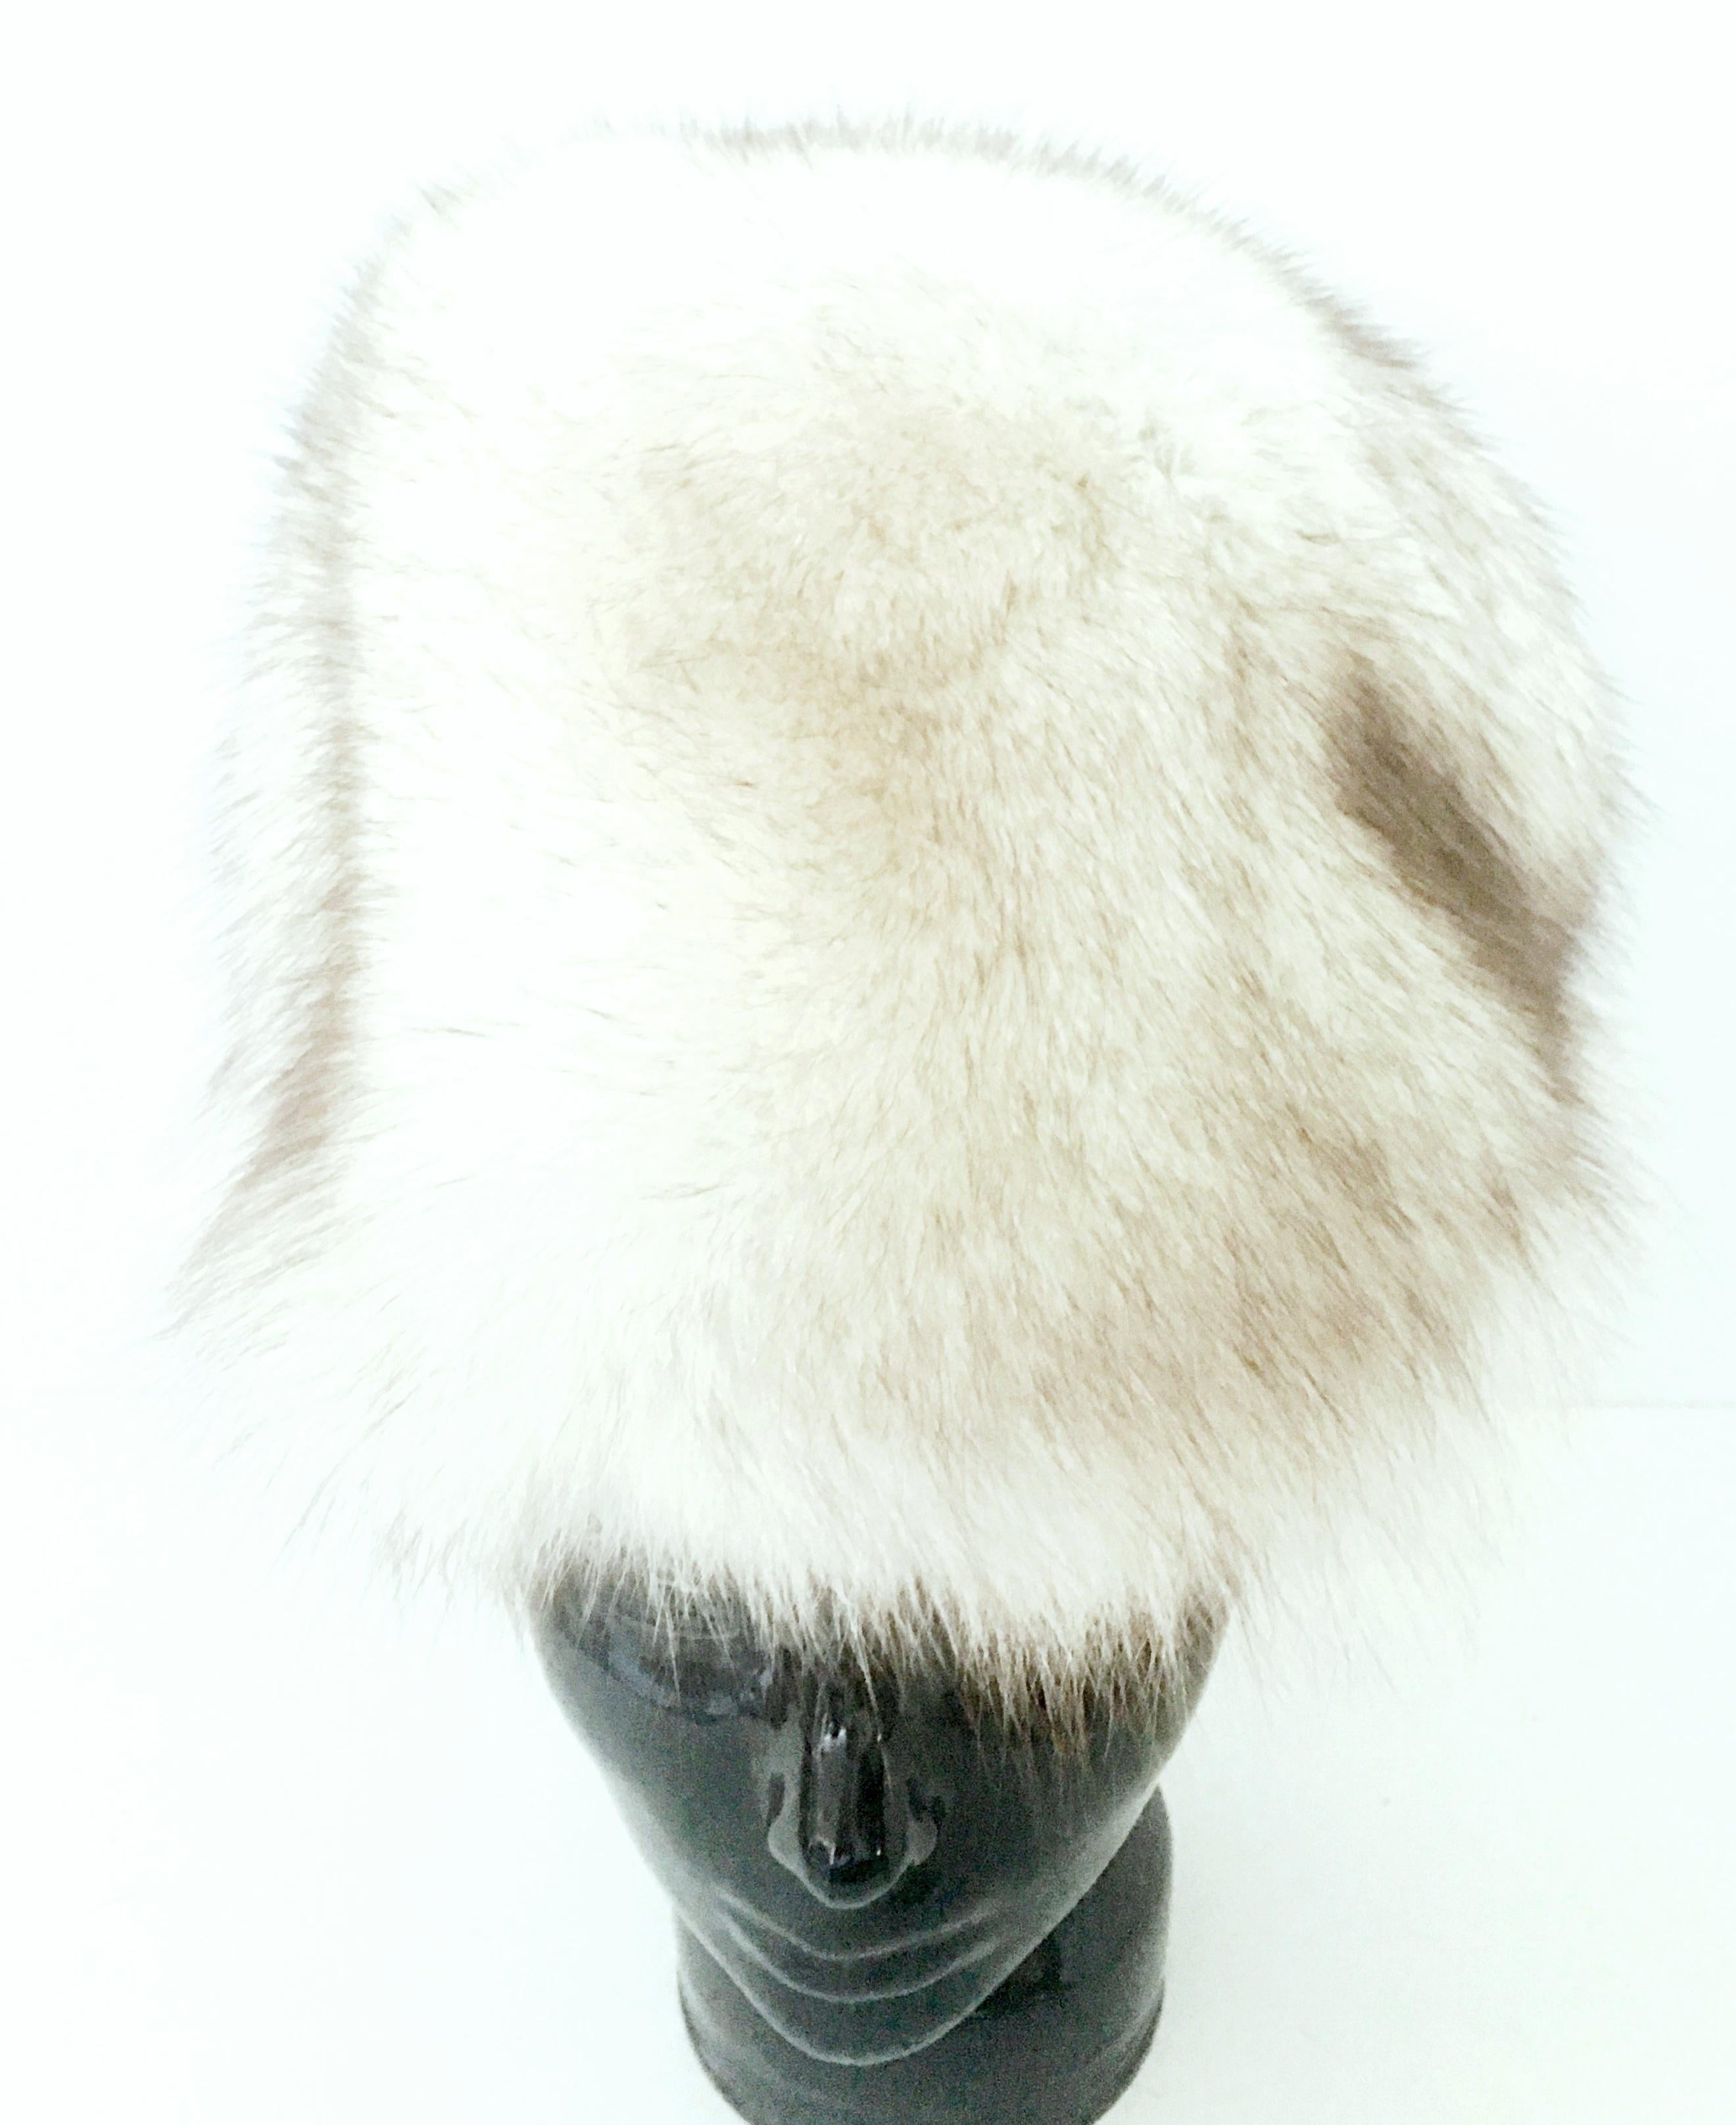 20. Jahrhundert Luxuriöse Hand Made White & Brown Tip Kanadische Fuchs Pelzmütze. Vollständig gefüttert mit dem originalen Herstelleretikett in Takt. Präsentiert sich neuwertig oder nur leicht gebraucht in tadellosem Zustand. 
Passt wie eine